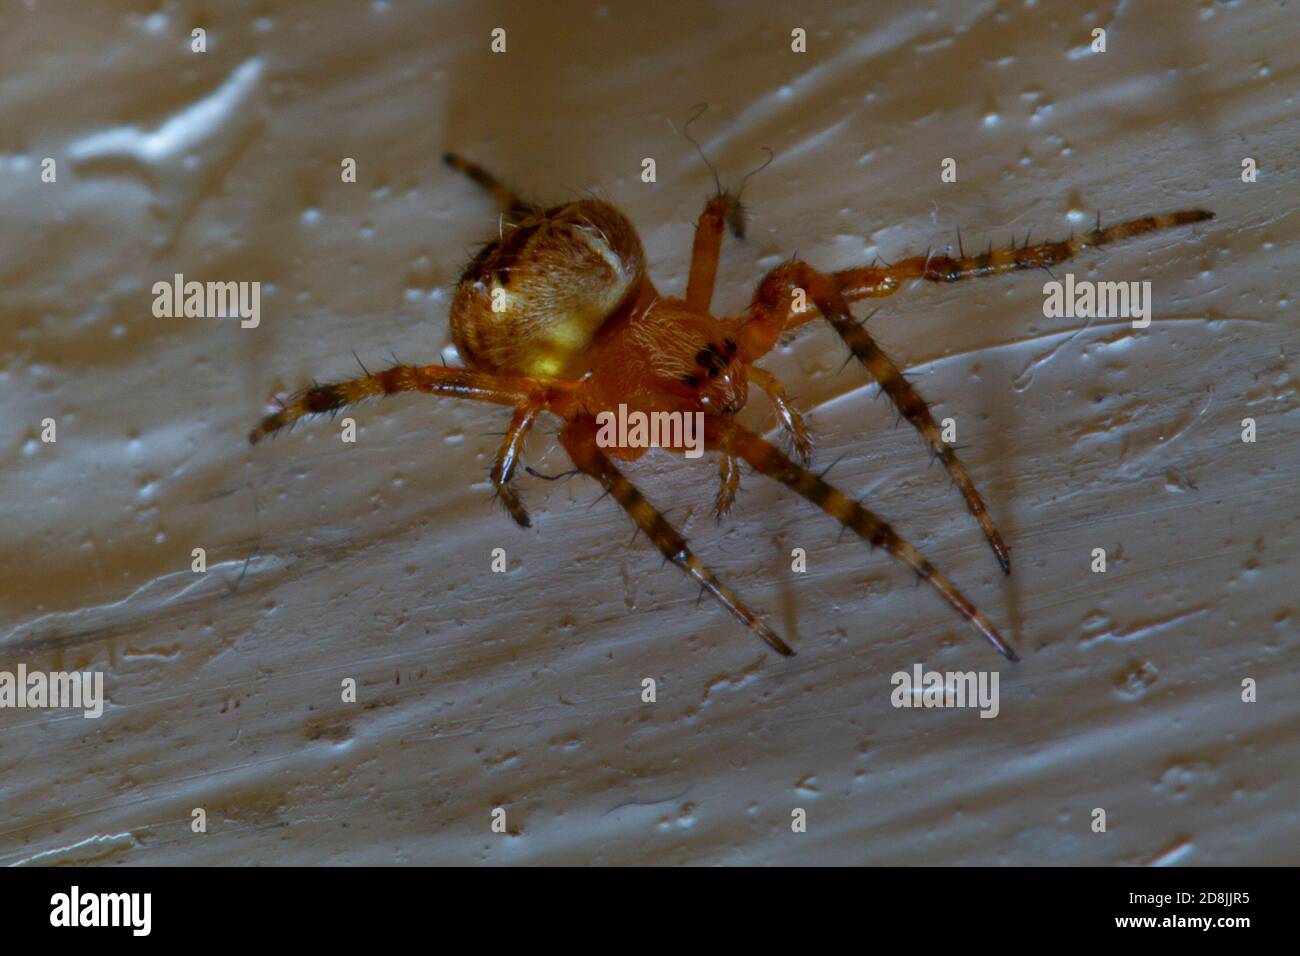 Imagen de cerca de una araña de tela enredada, también conocida como una araña con pies de peine. Estas arañas pertenecen a la familia Theridiidae. Esta imagen fue capturada en un hou interior Foto de stock